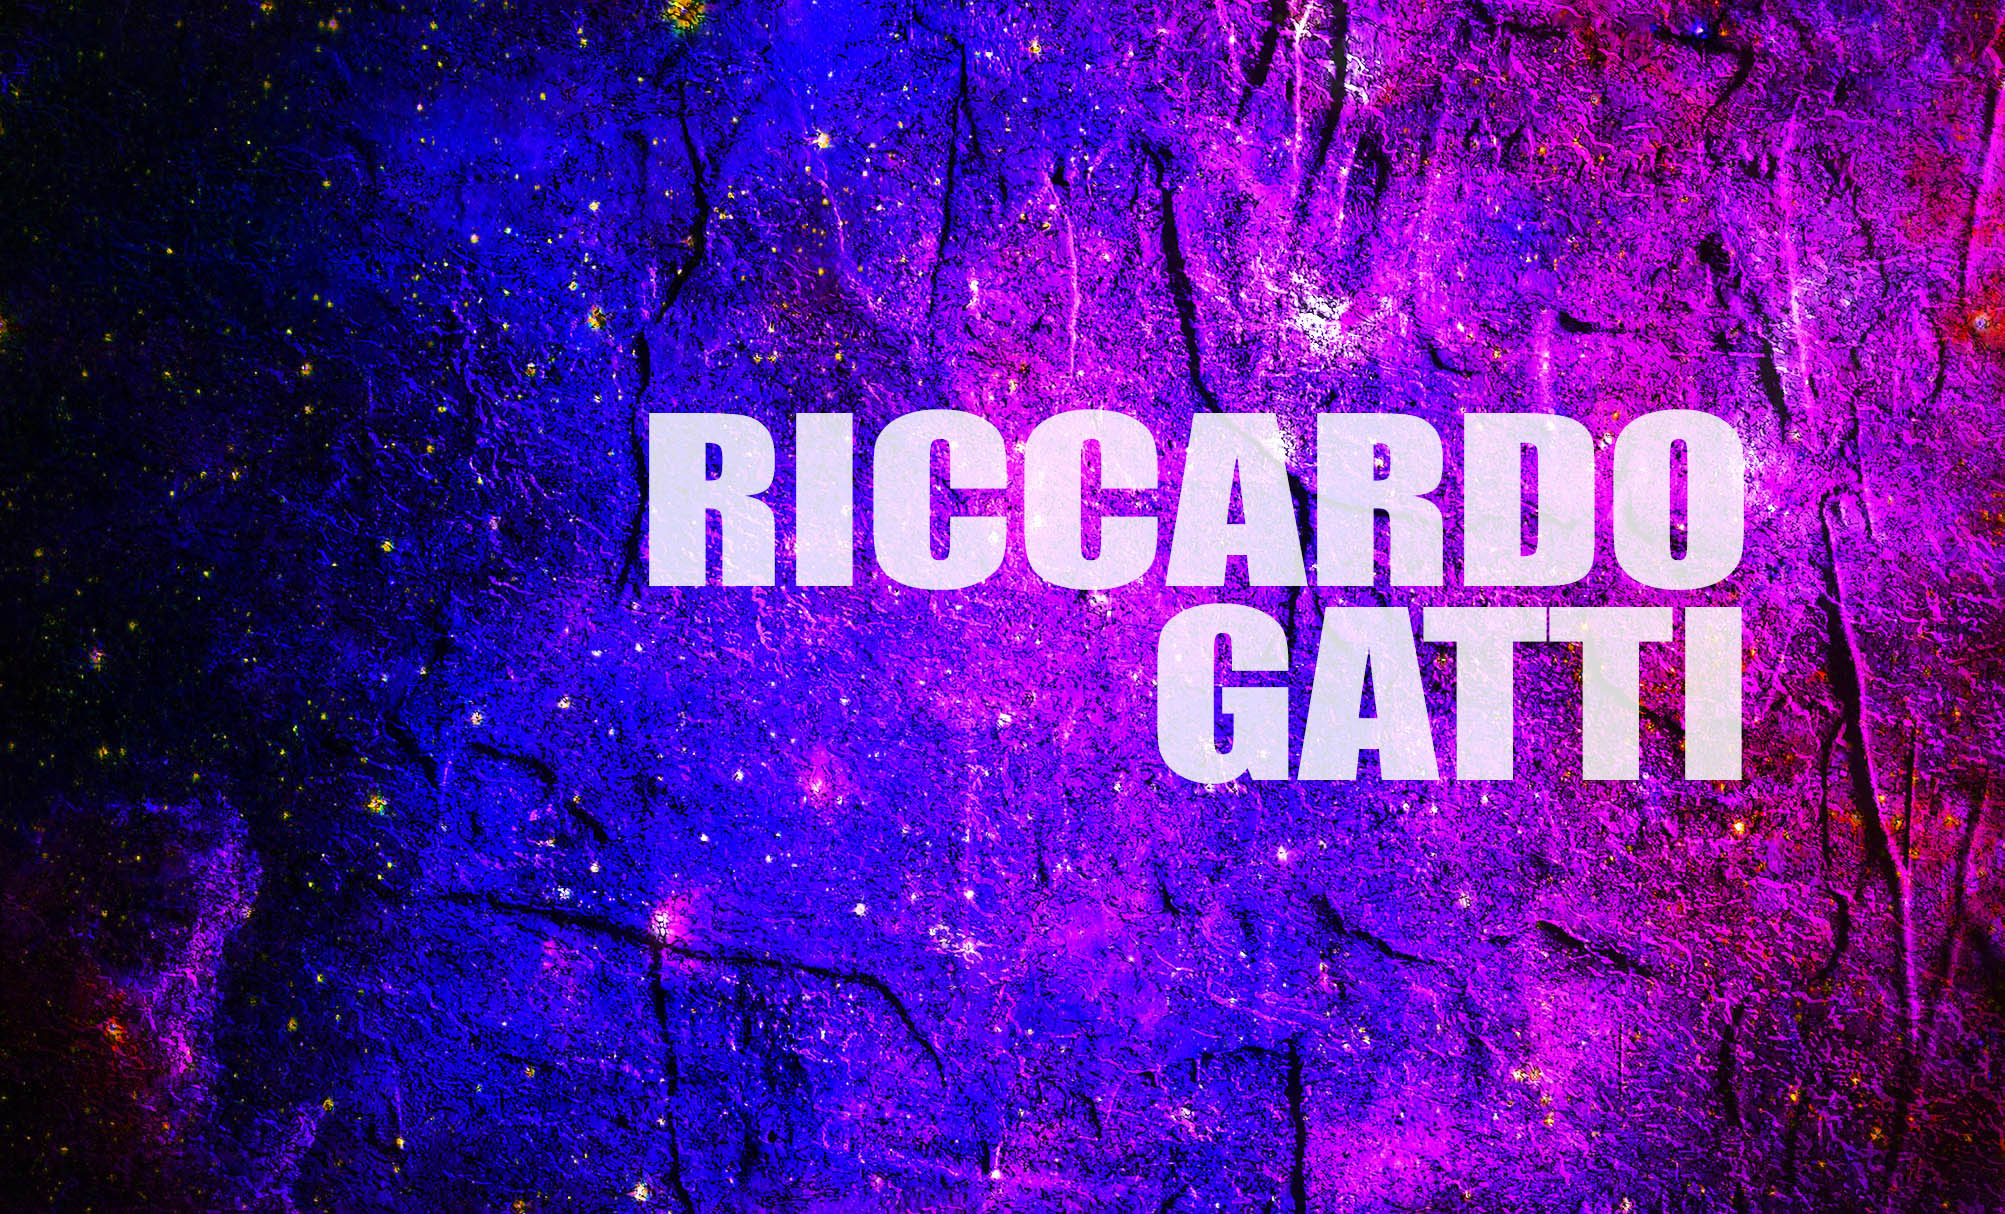 Riccardo Gatti